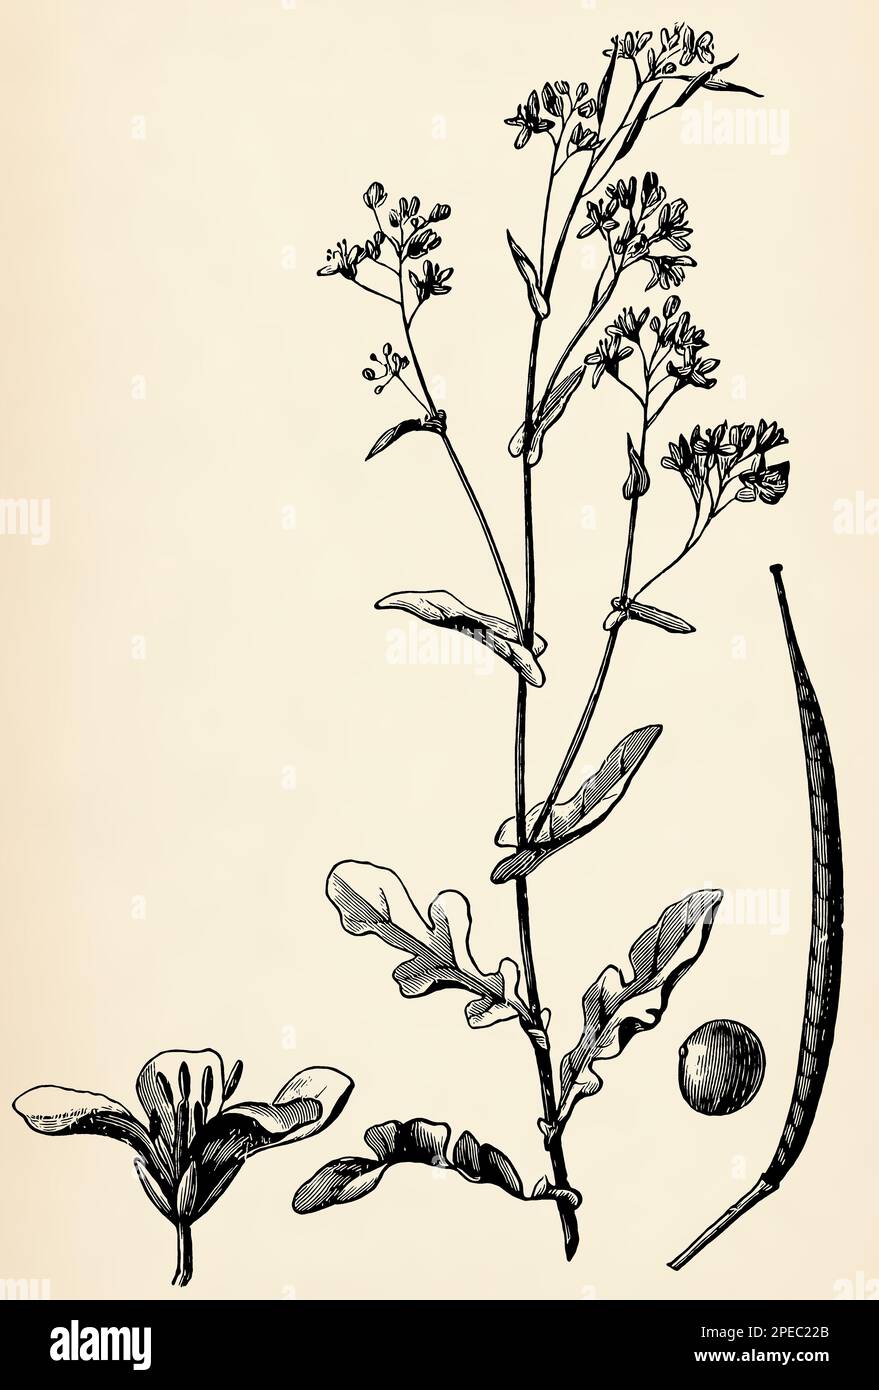 Stängel, Blumen und Früchte der Brassica rapa. Antike stilisierte Illustration. Stockfoto